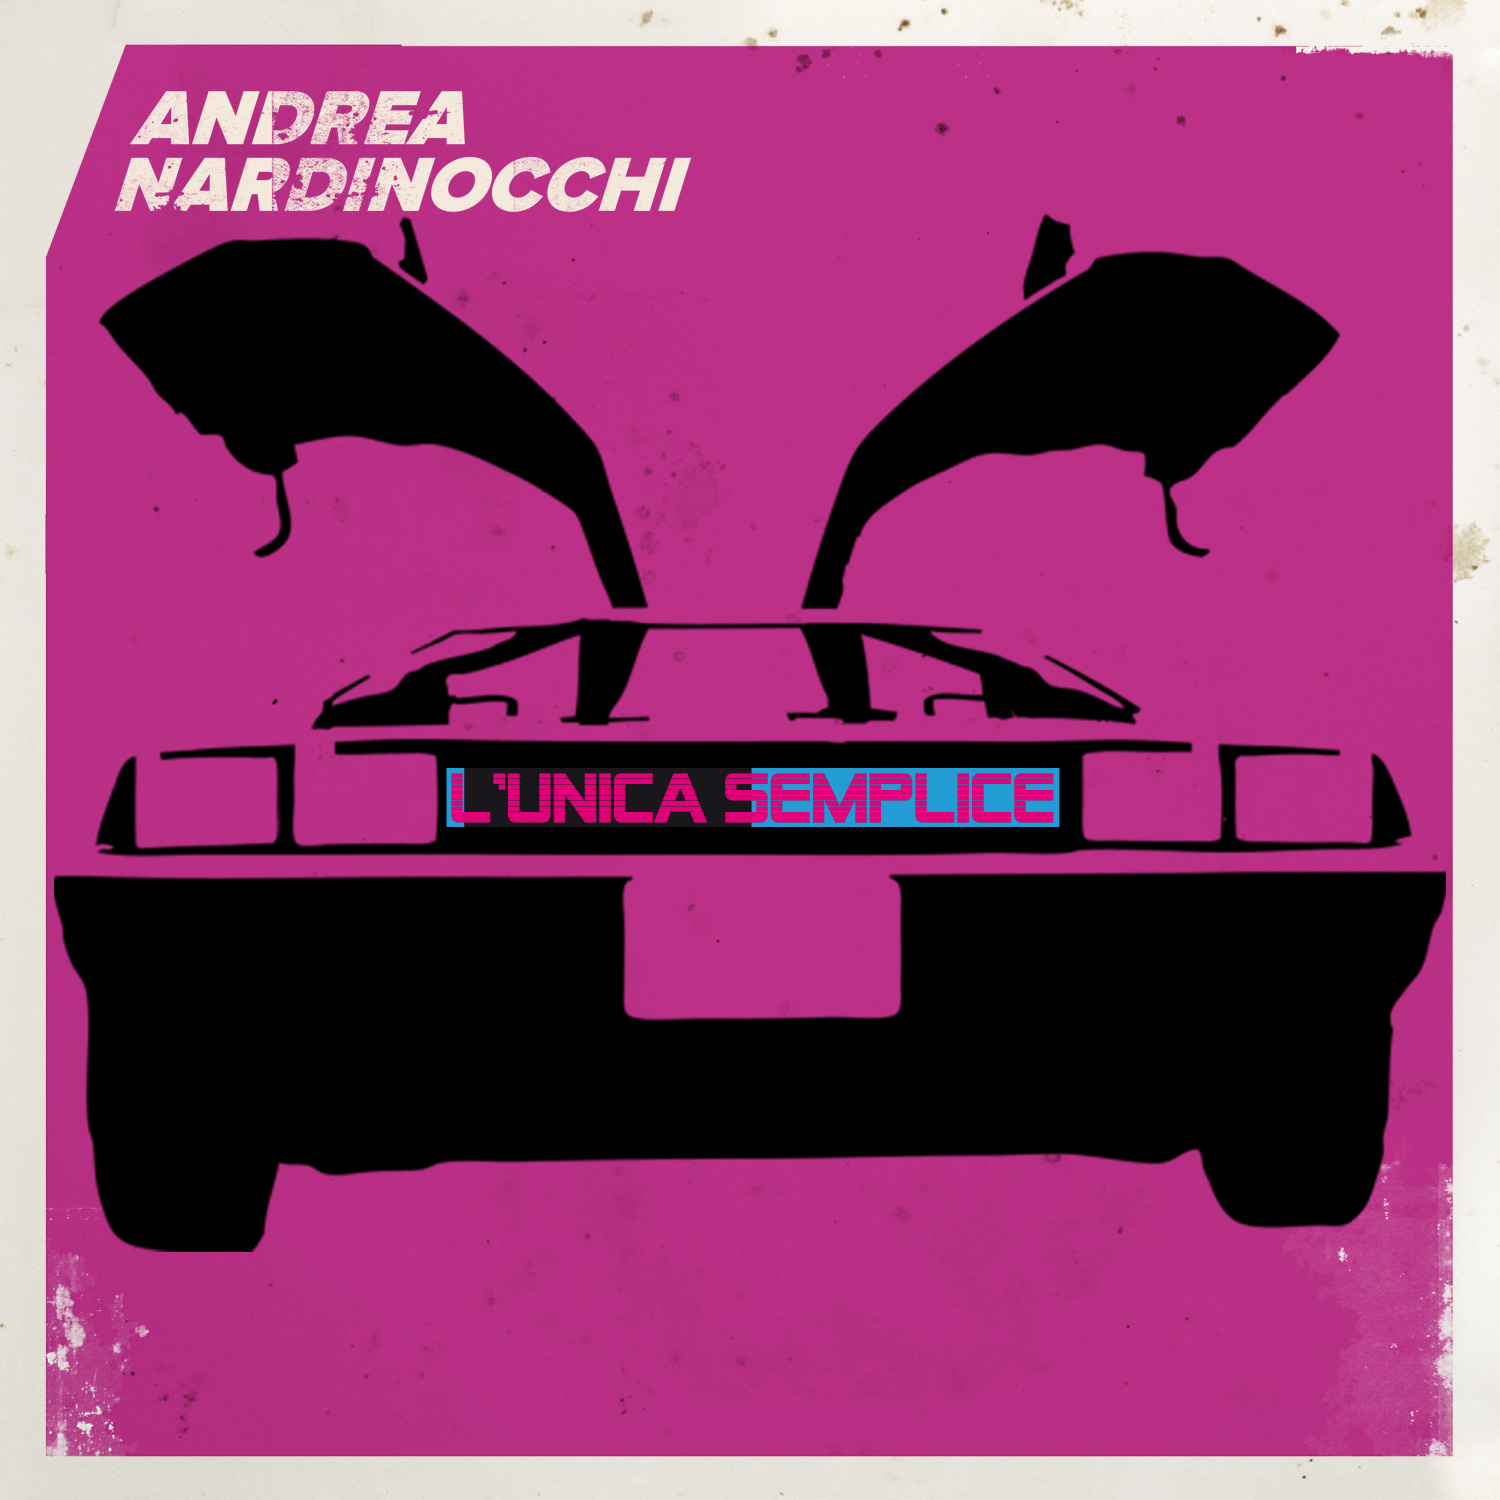 Andrea Nardinocchi: "L'Unica Semplice" è il nuovo singolo in radio da venerdi 15 maggio